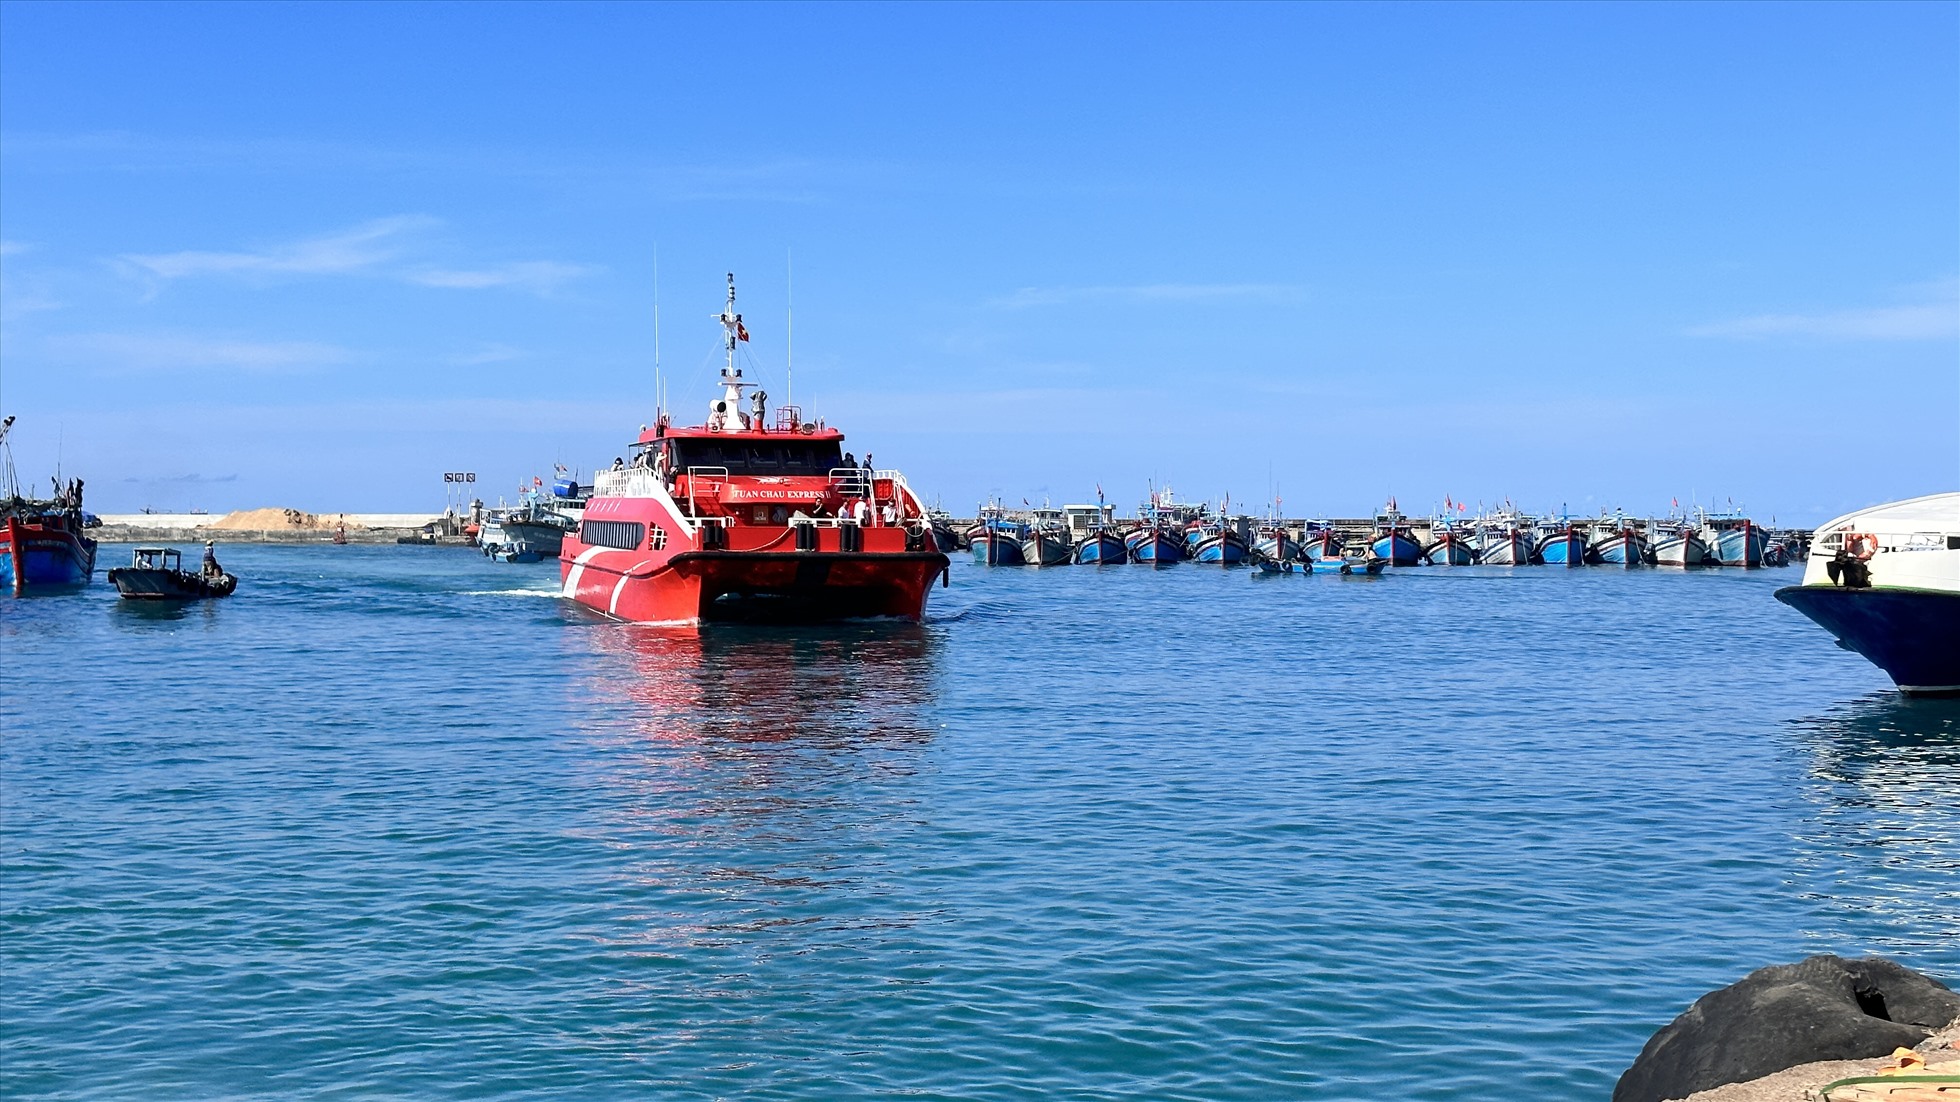 Tàu cao tốc chuẩn bị cập cảng Phú Quý. Ảnh: Duy Tuấn